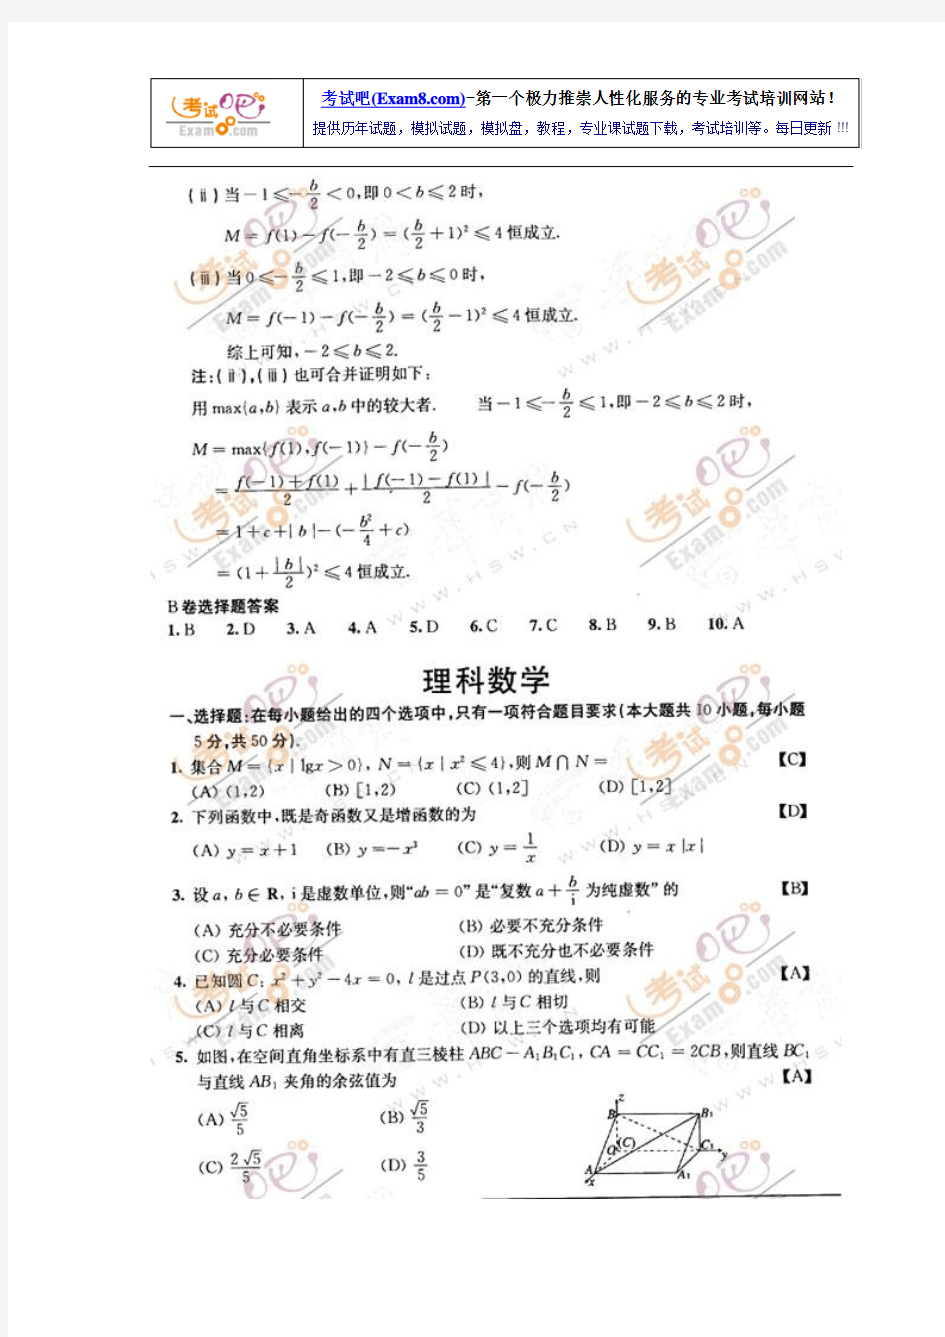 【免费下载】考试吧专供2012年陕西高考理数试卷及答案